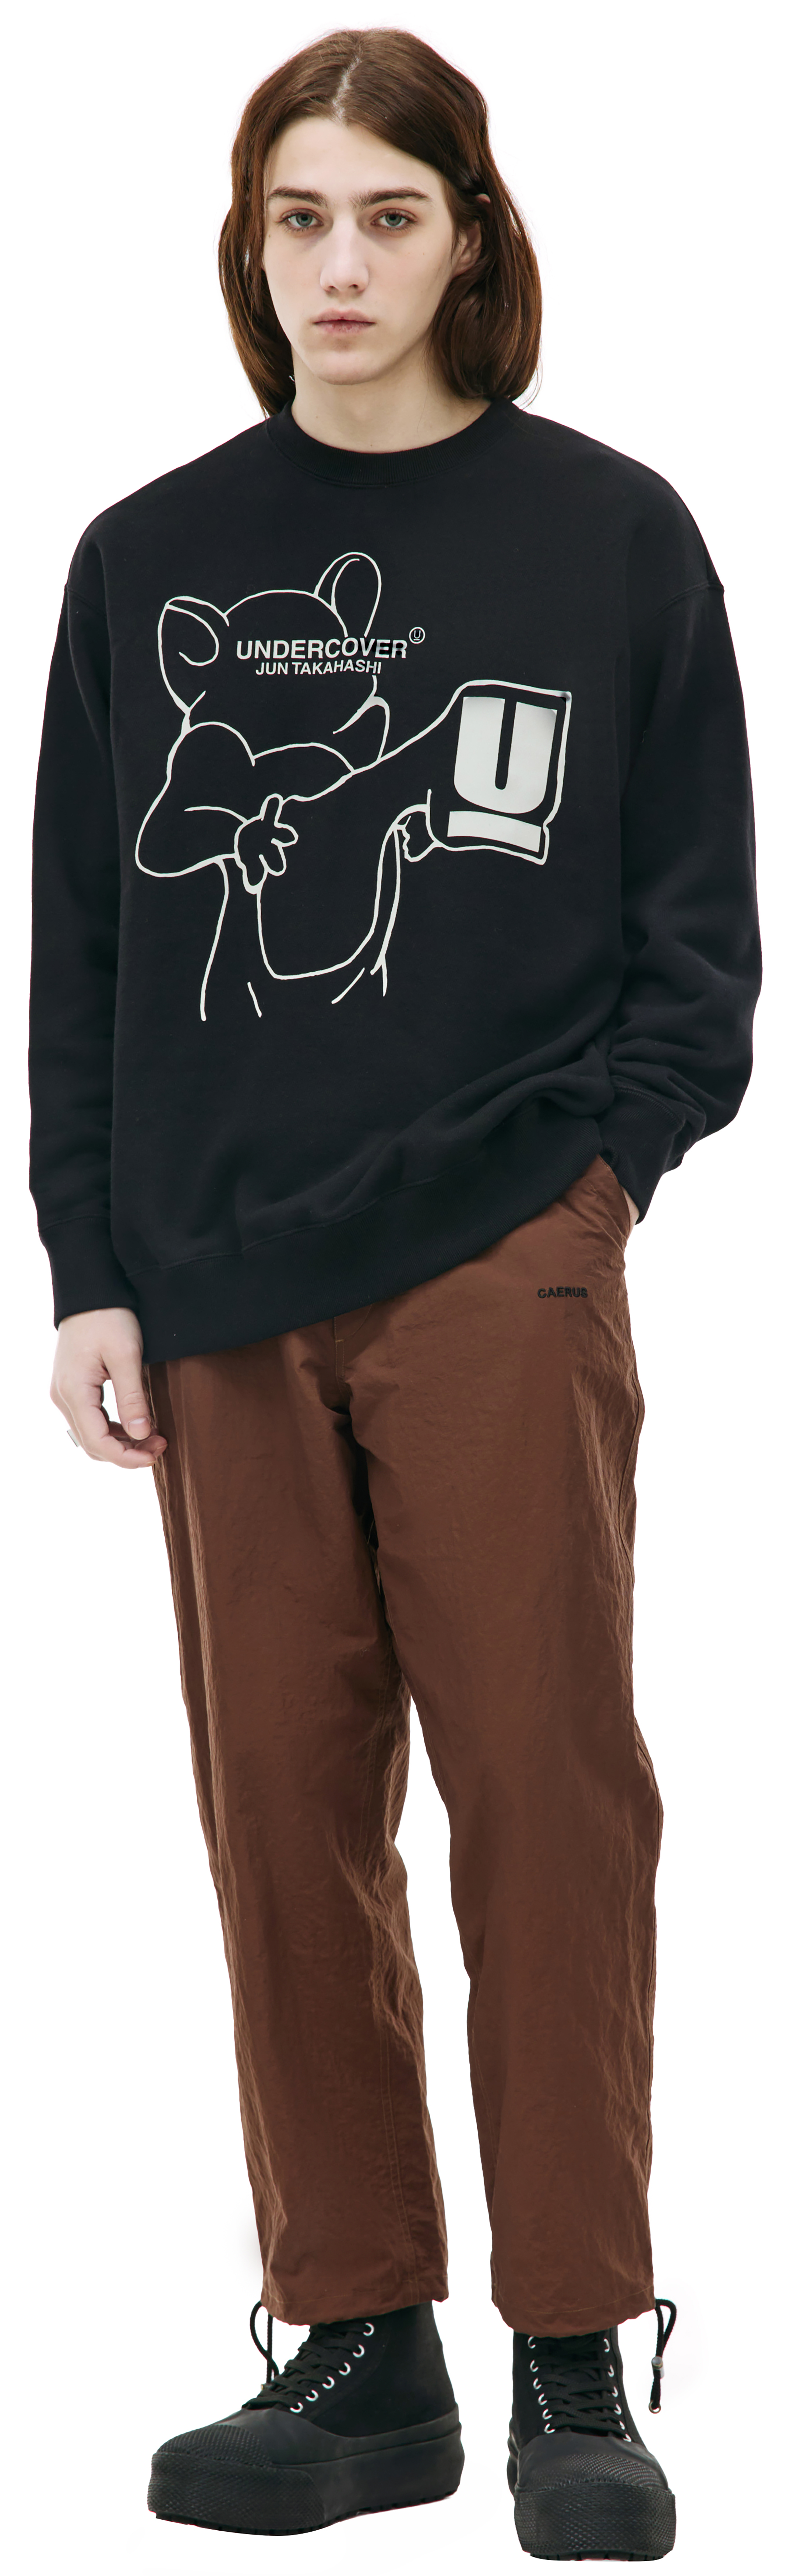 Buy Undercover men black graphic logo sweatshirt for $360 online